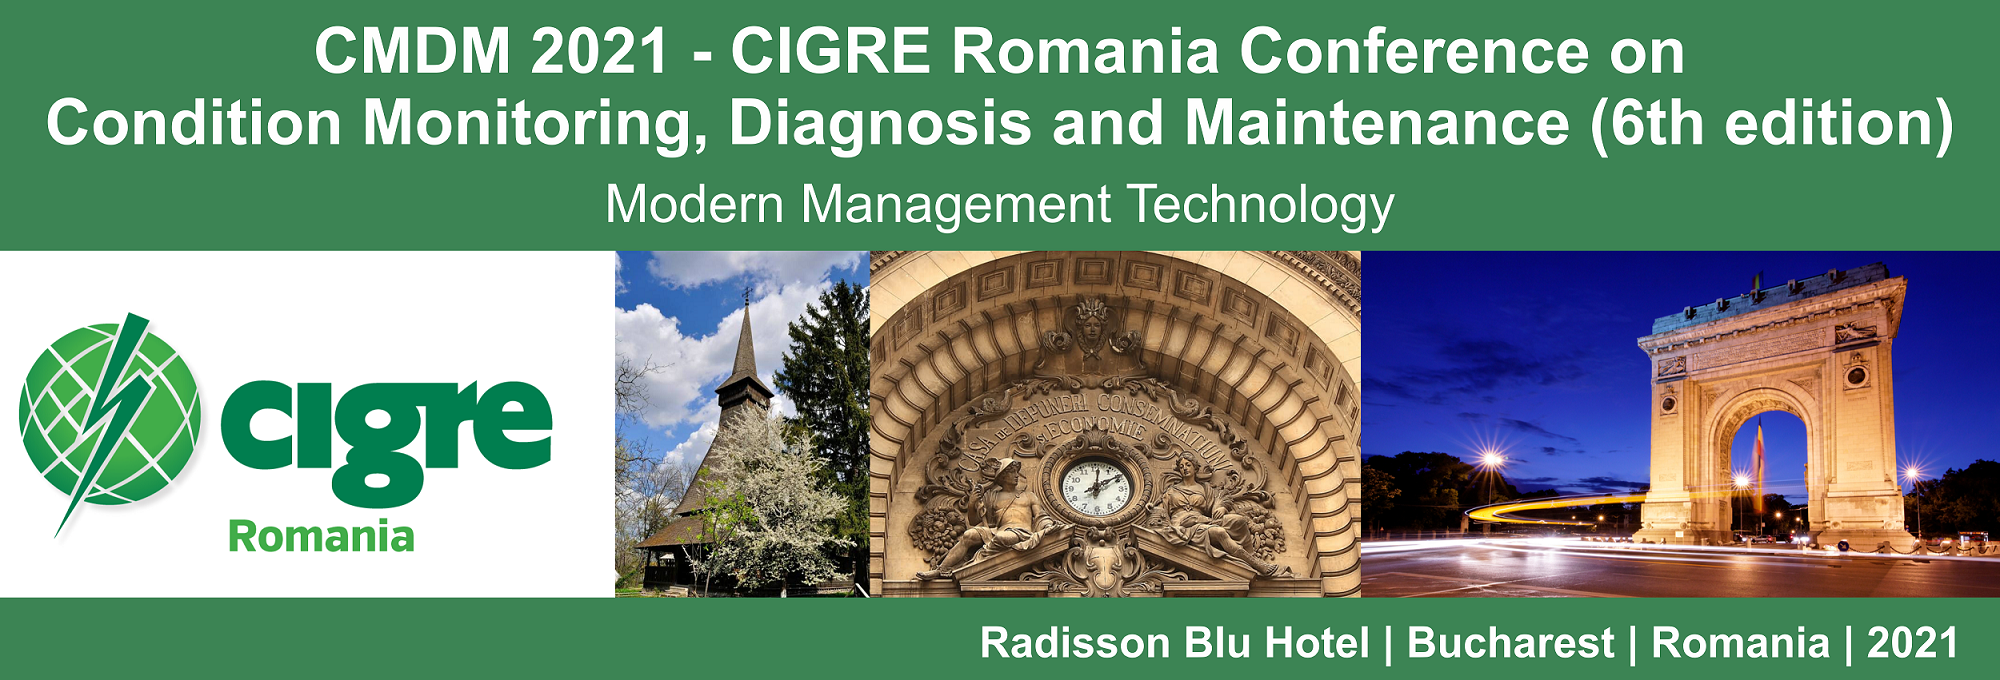 CMDM 2021 - CIGRE Romania conference